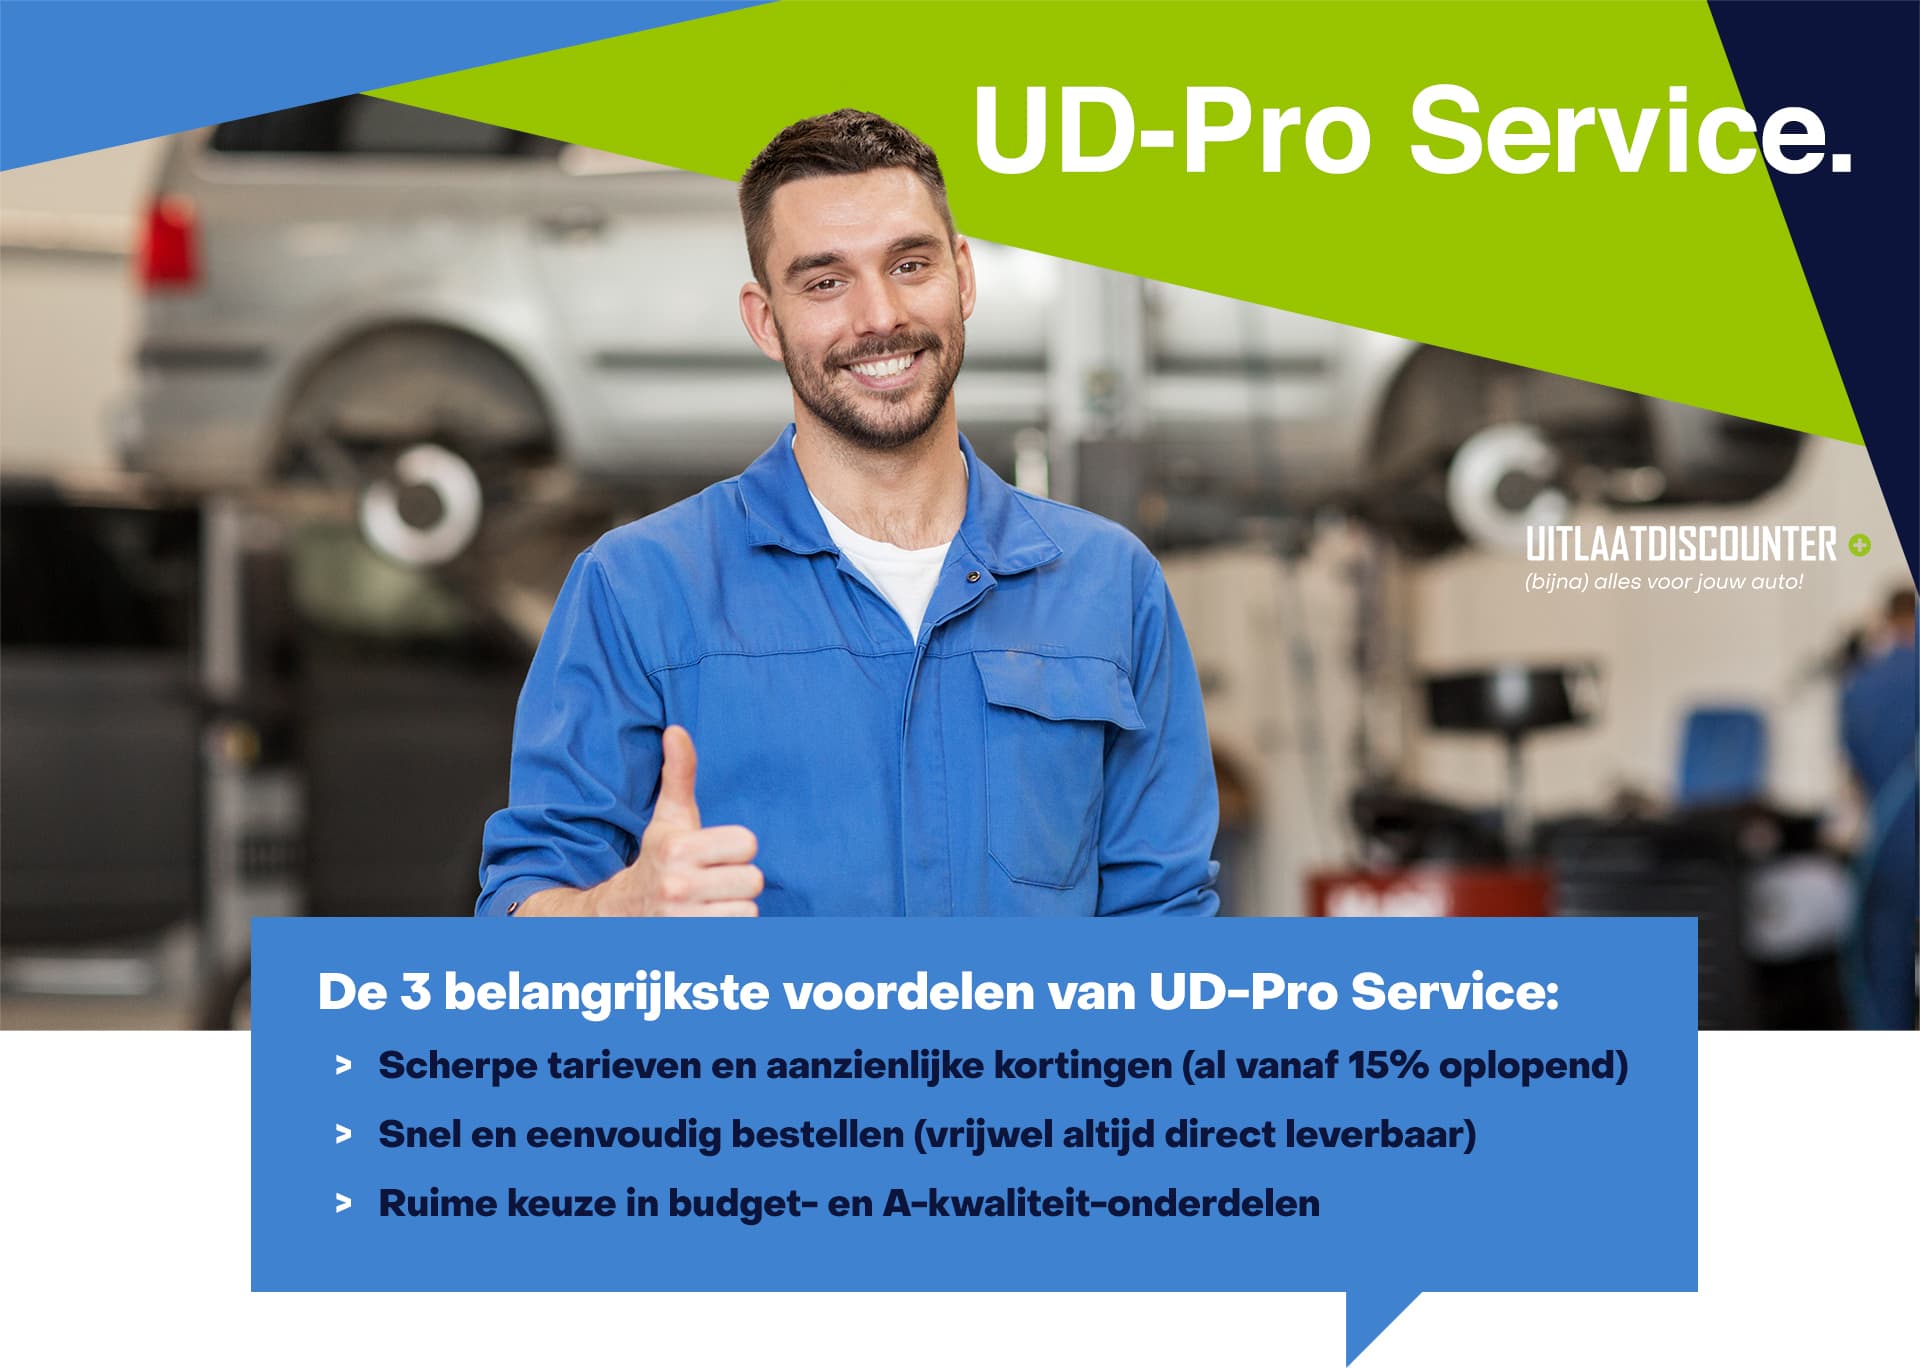 UD-Pro service. Speciaal voor zakelijke bezoekers van uitlaatdiscounter